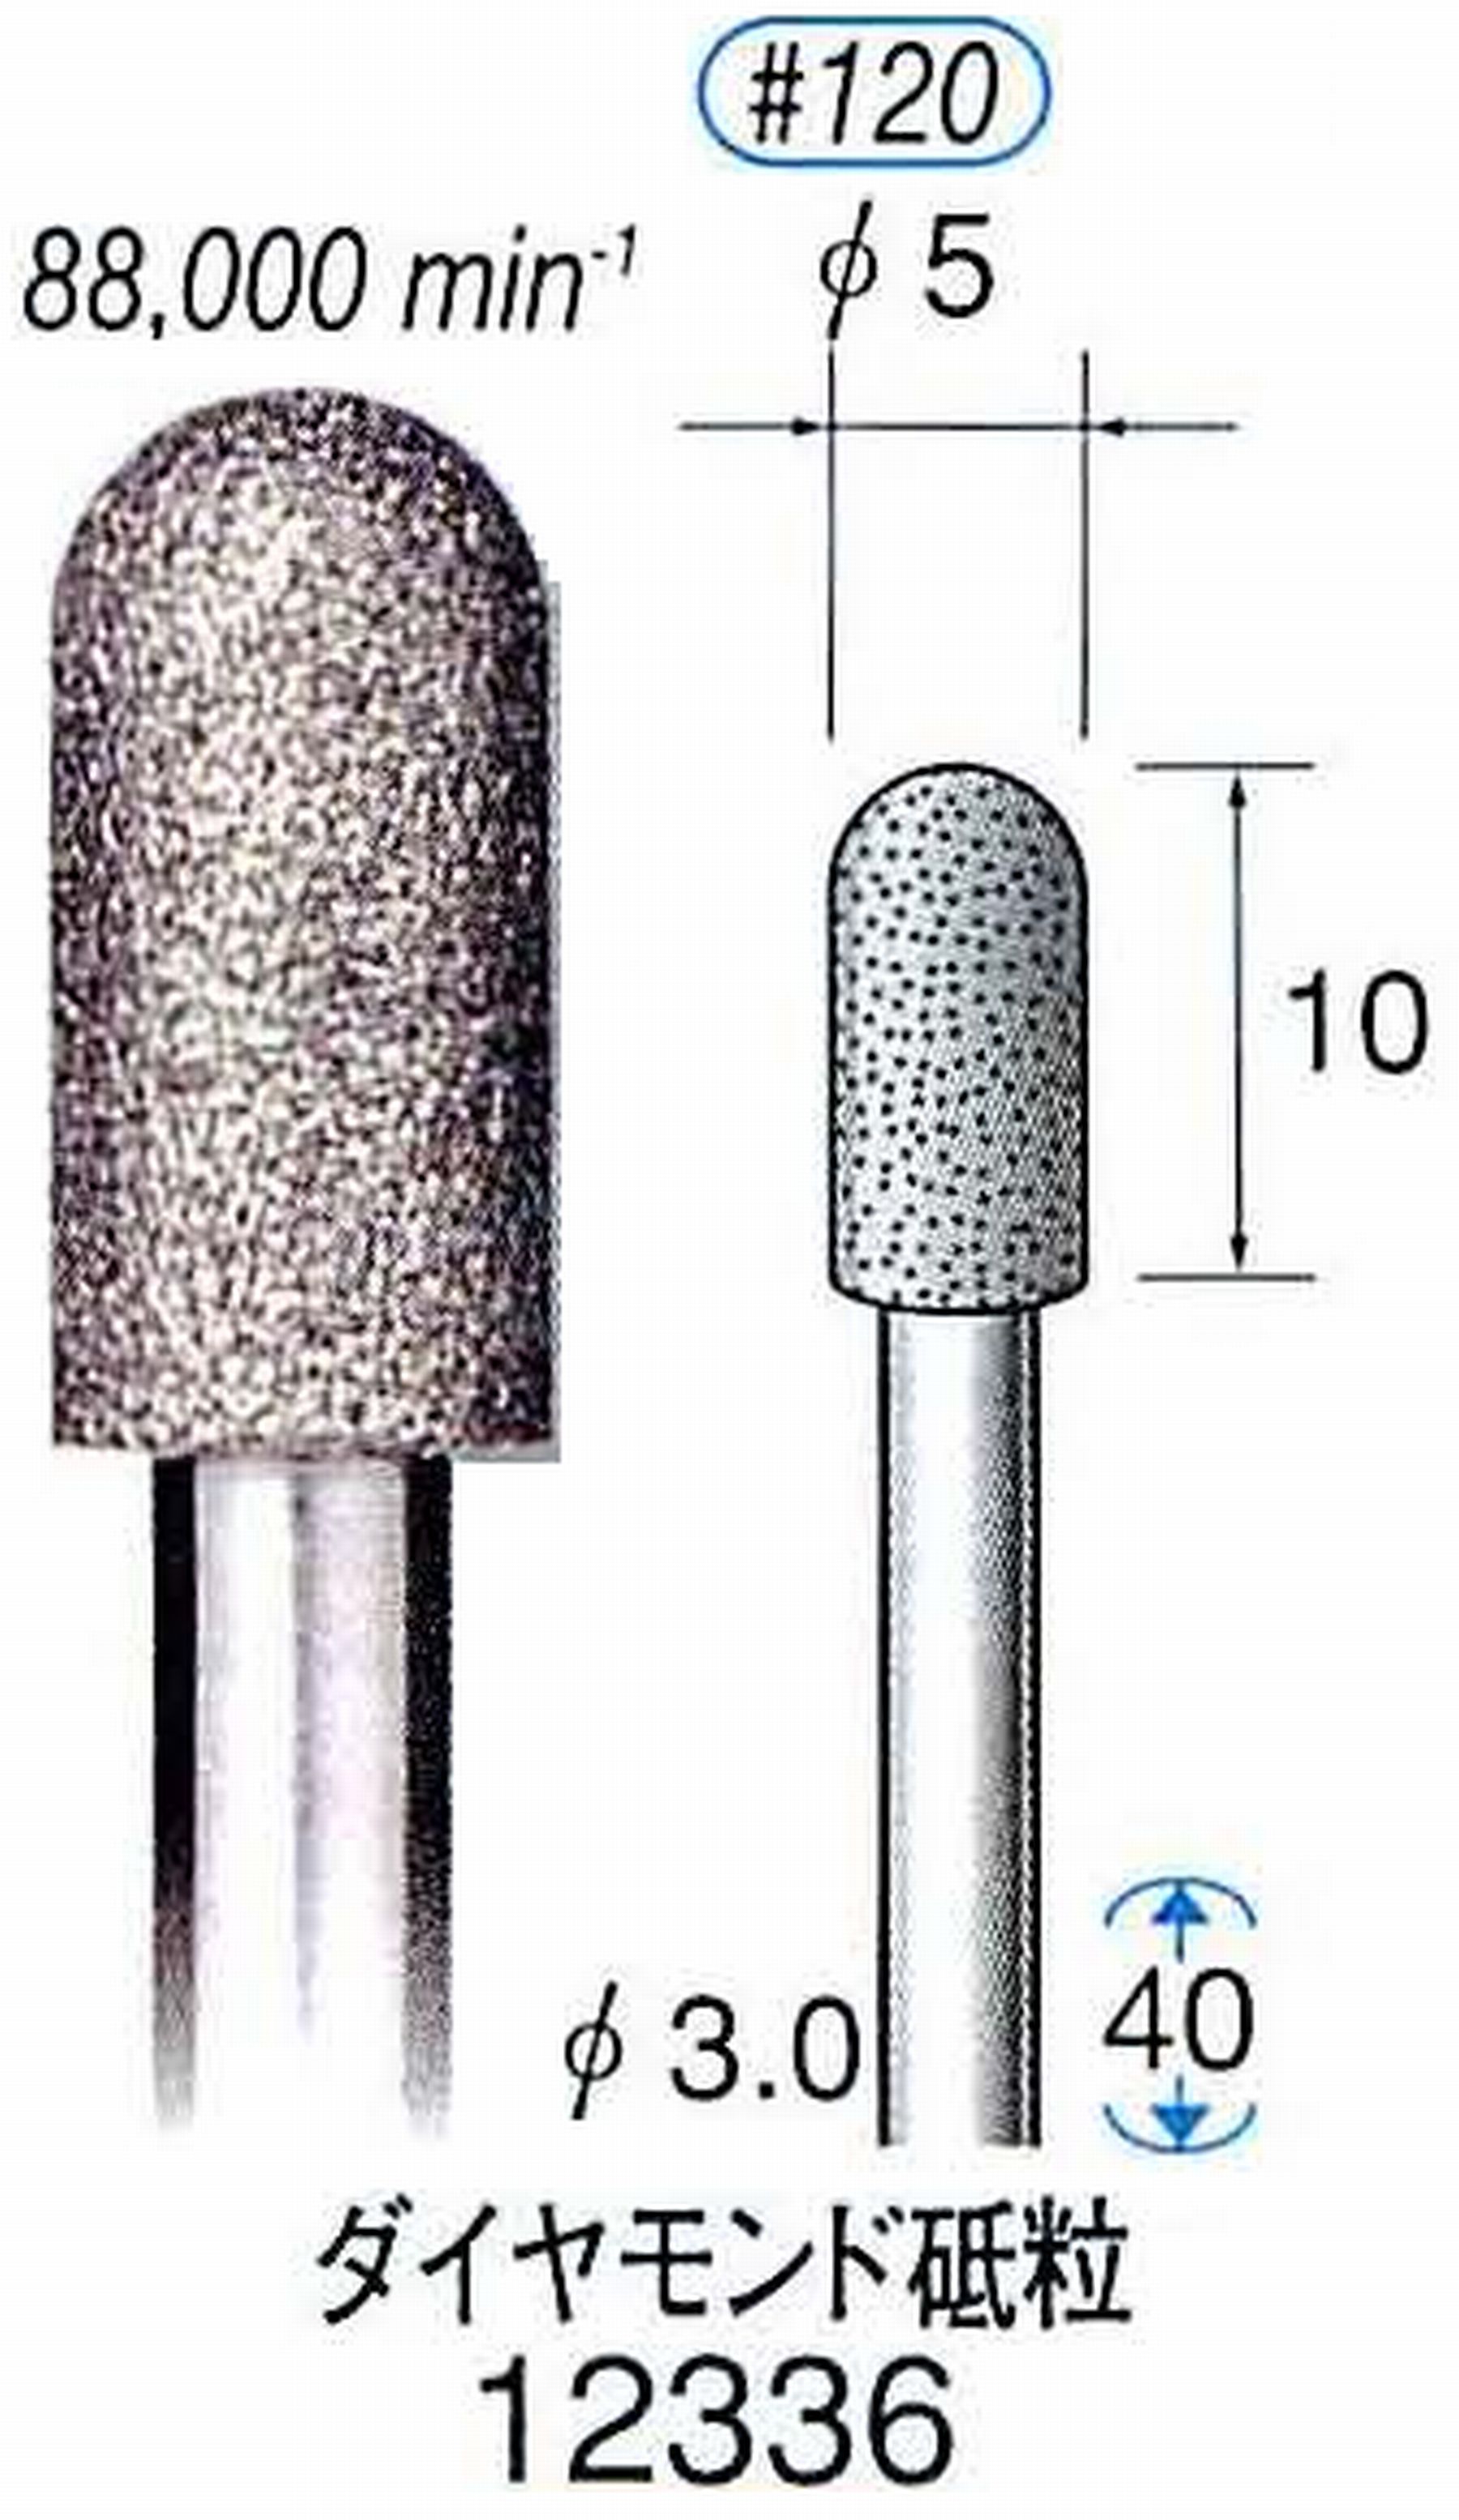 ナカニシ/NAKANISHI 電着ダイヤモンド ダイヤモンド砥粒 軸径(シャンク)φ3.0mm 12336